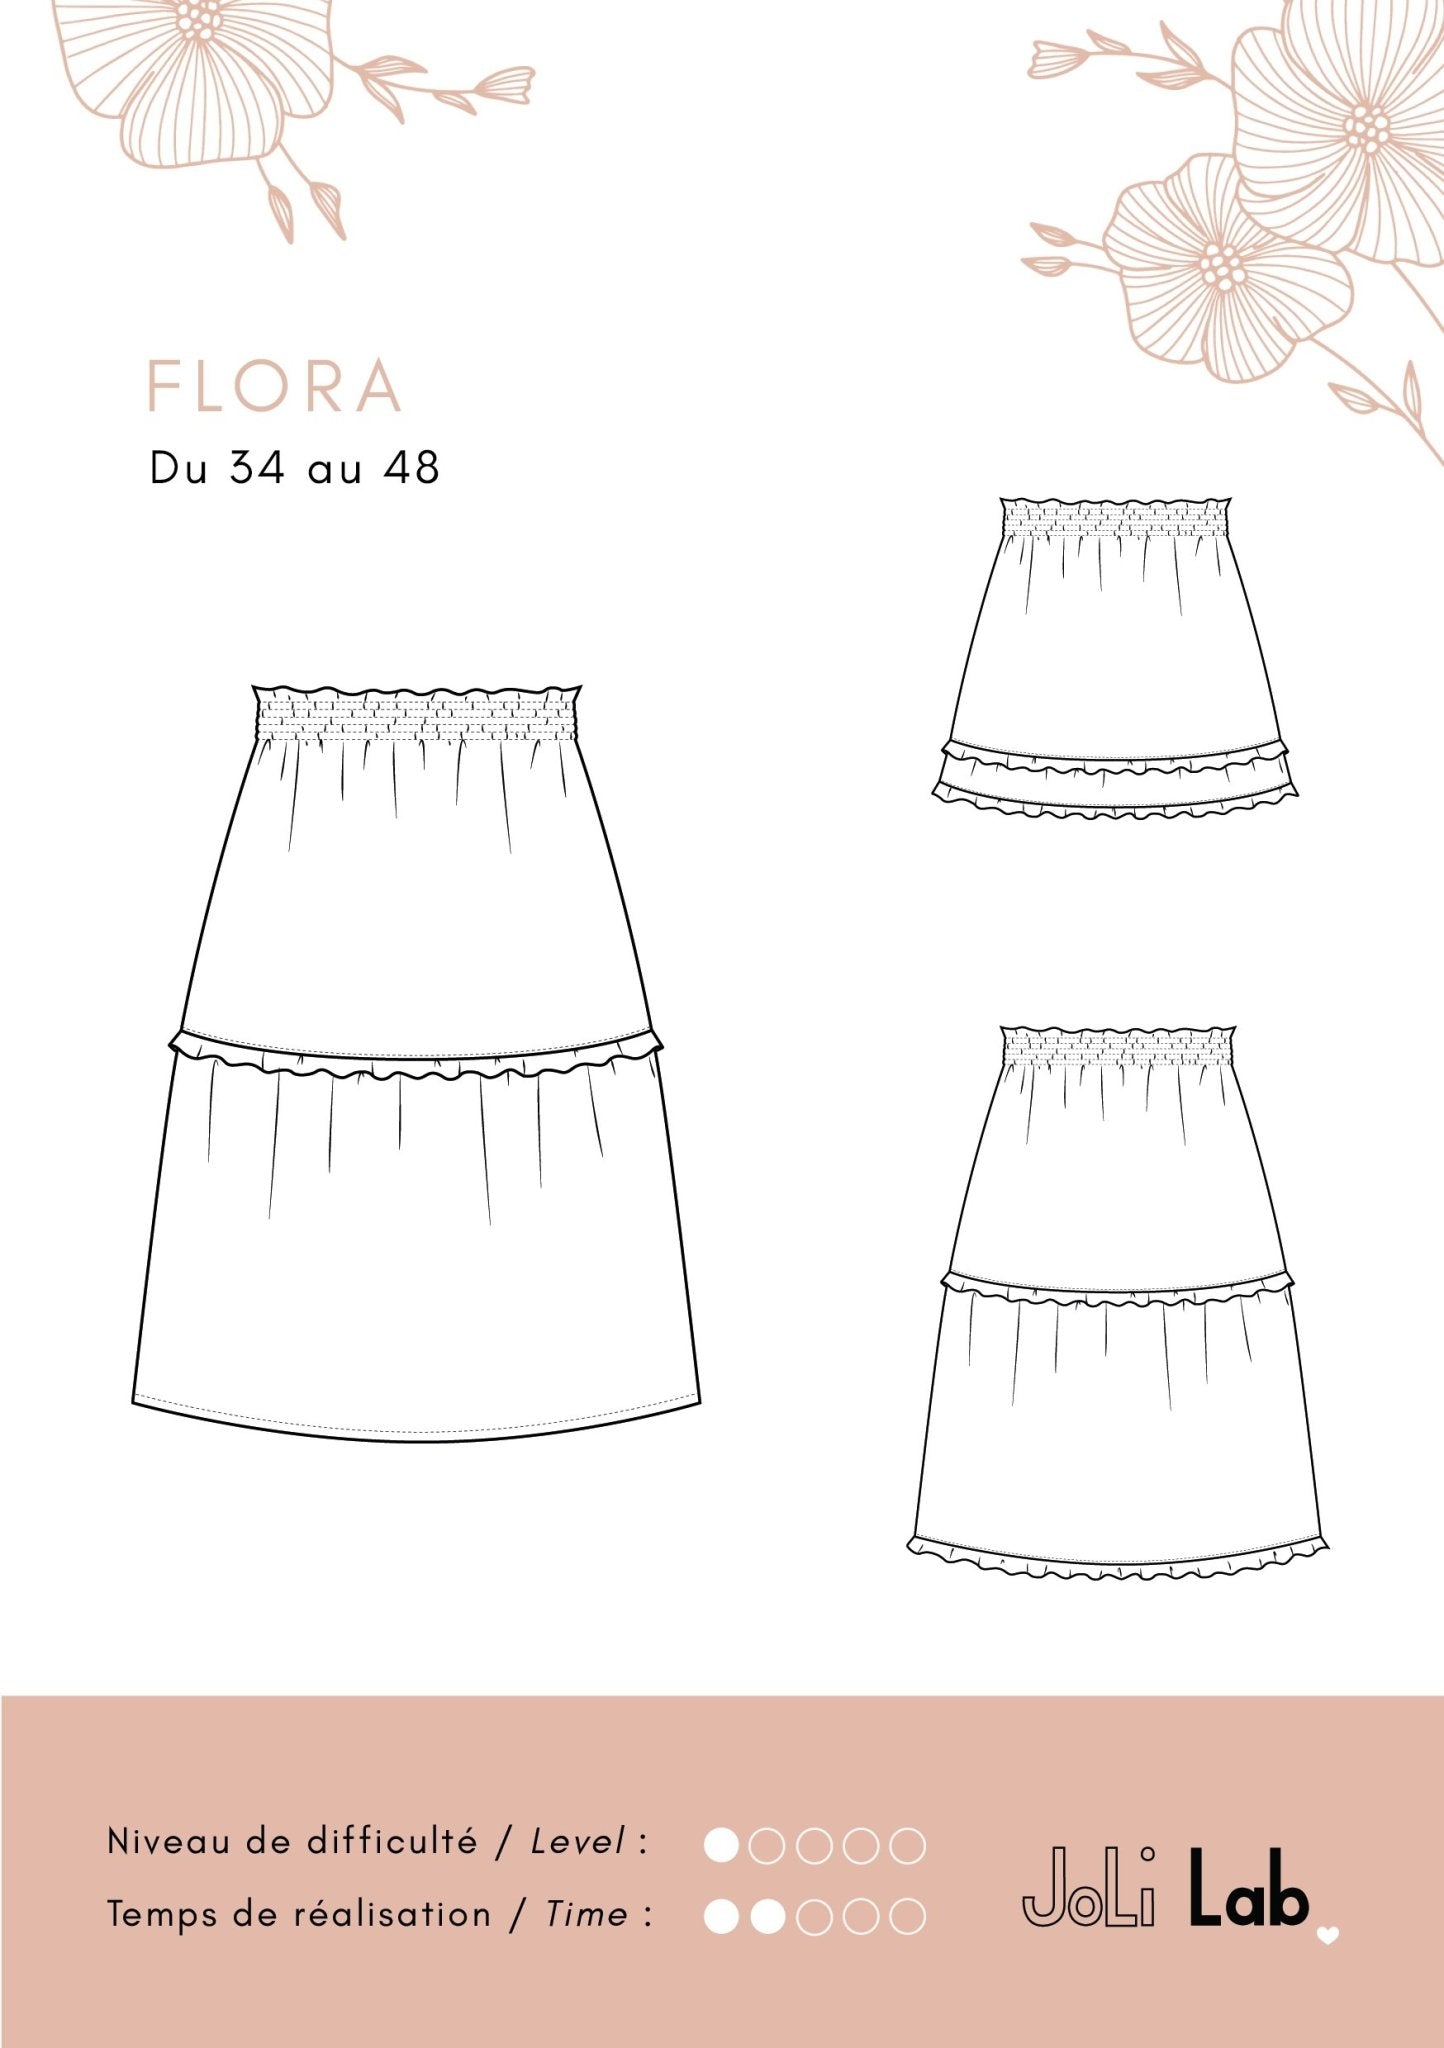 Flora Skirt - pattern PDF or paper - Joli Lab